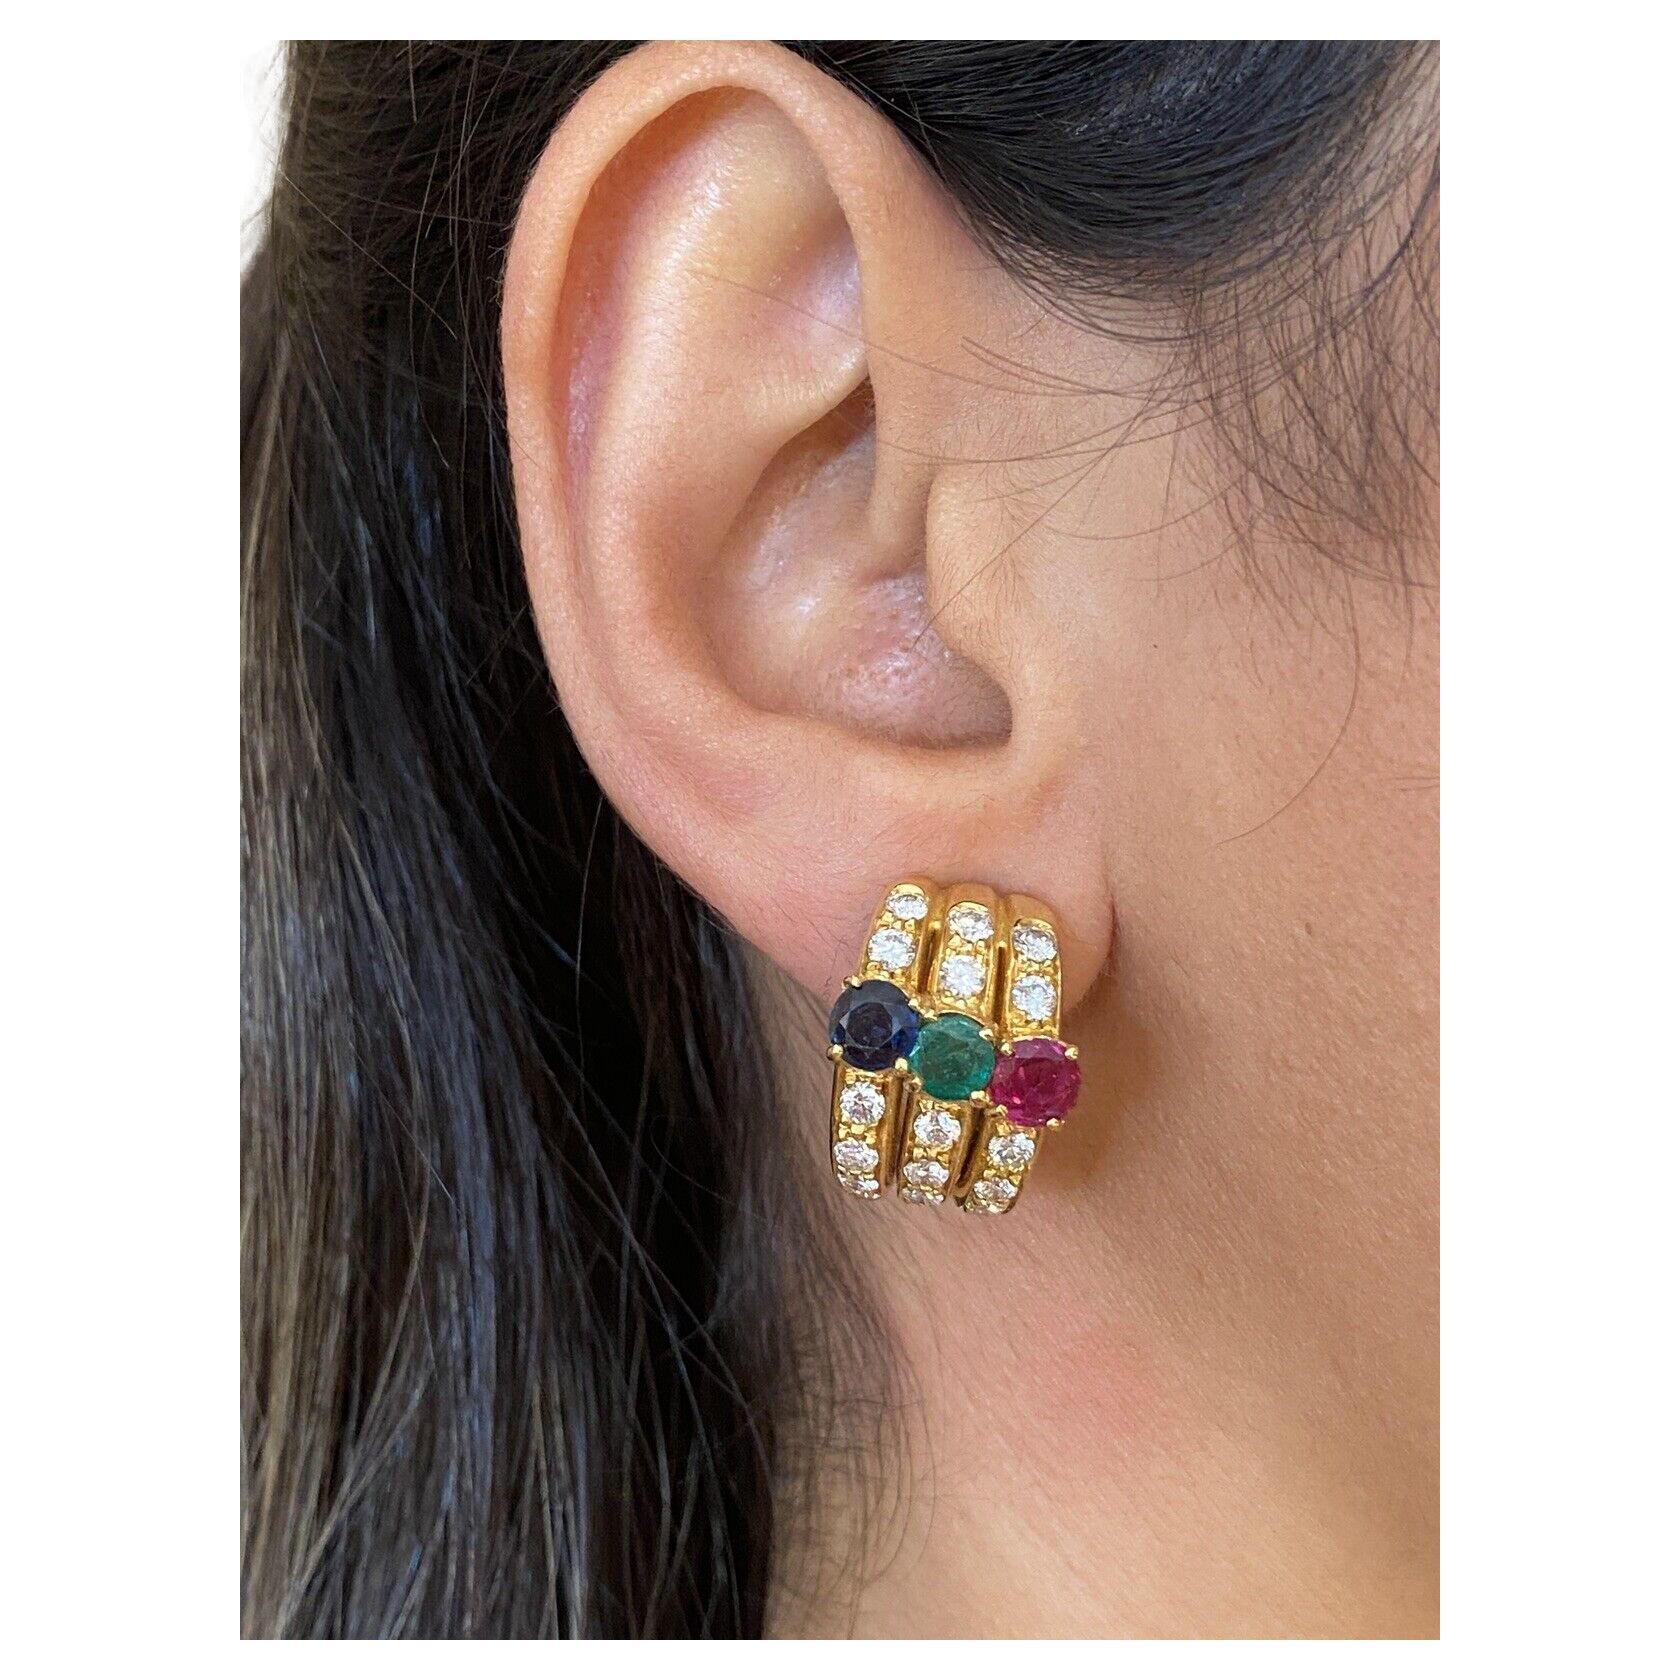 Halbe Ohrringe mit Diamanten, Rubinen, Smaragden und Saphiren aus 18k Gelbgold